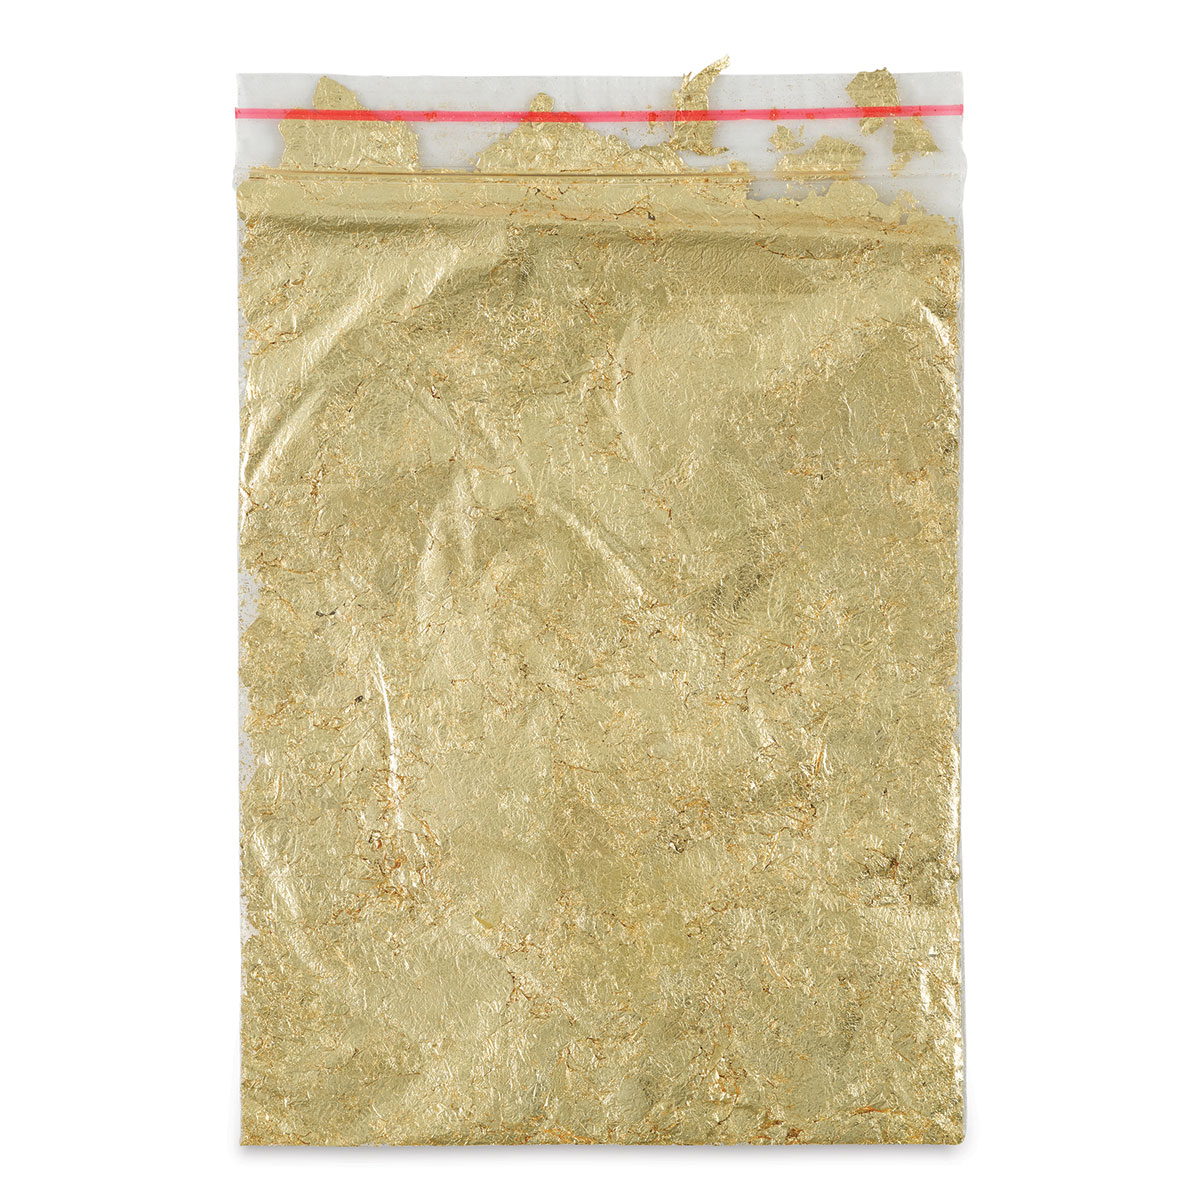 Variegated Metal Leaf Flakes - 3 Grams